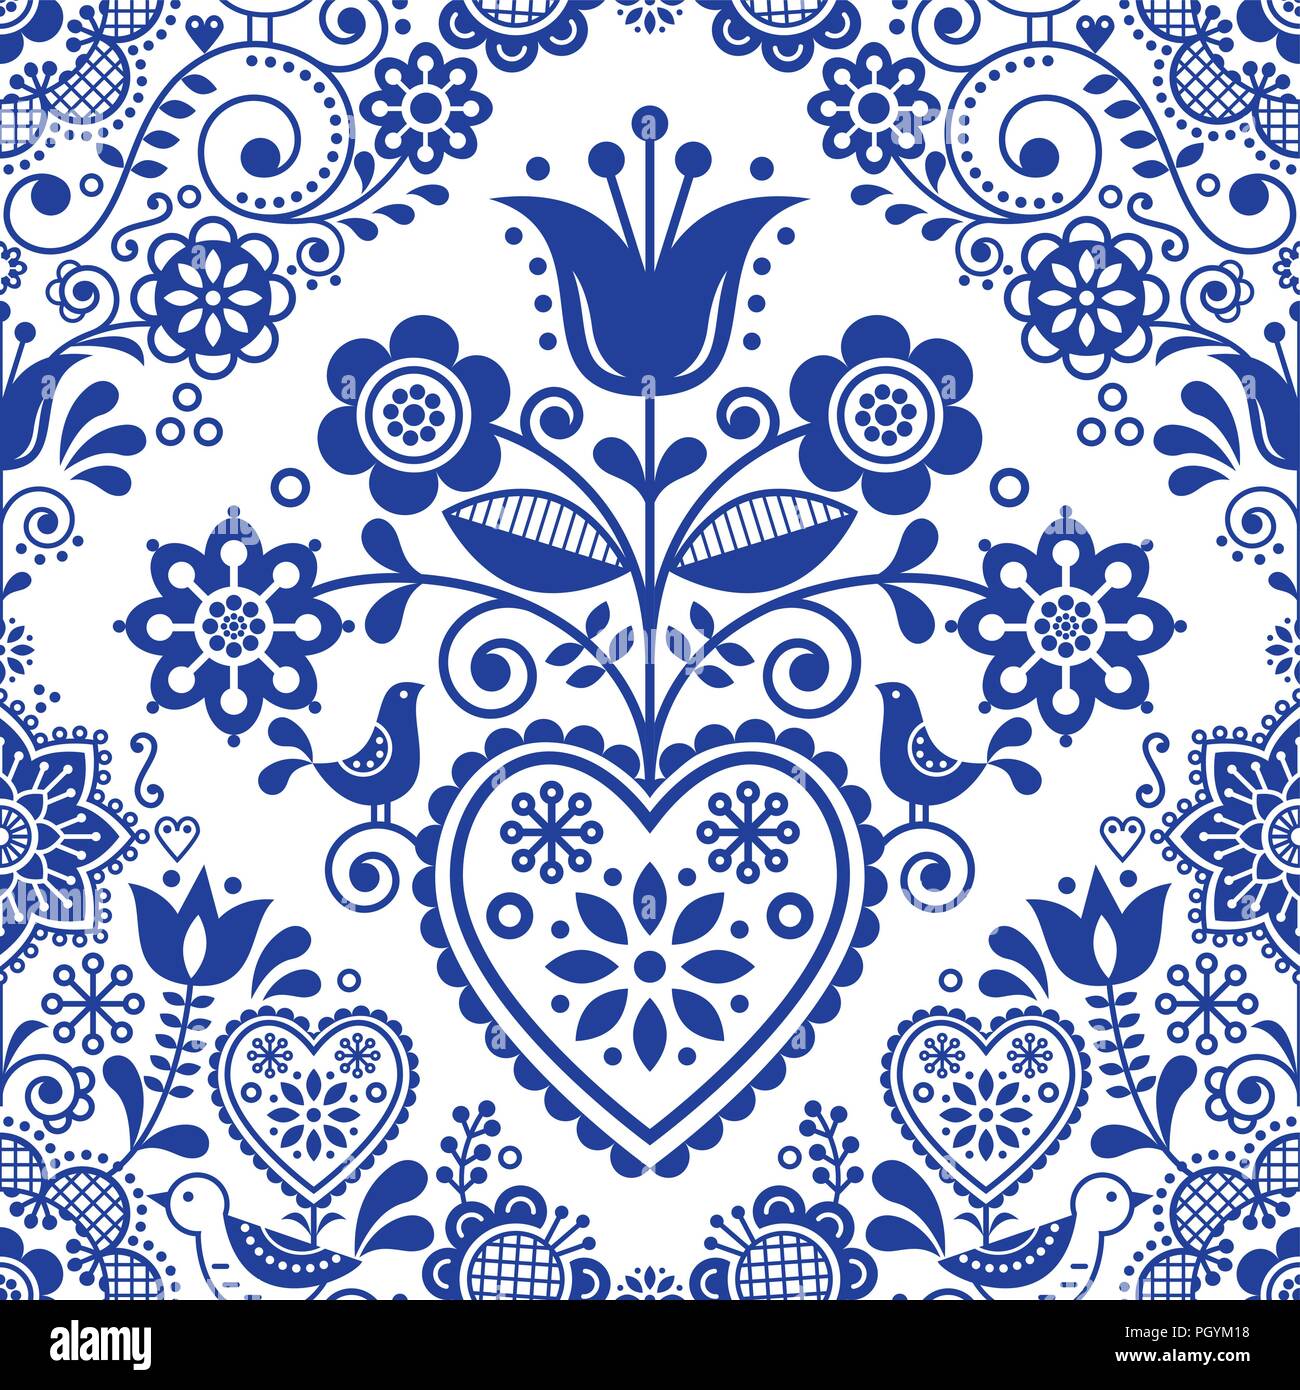 Seamless arte popolare modello di vettore con uccelli e fiori, scandinavo o Nordic blu navy ripetitivo design floreale. In stile retrò navy blue ornamento, Sc Illustrazione Vettoriale